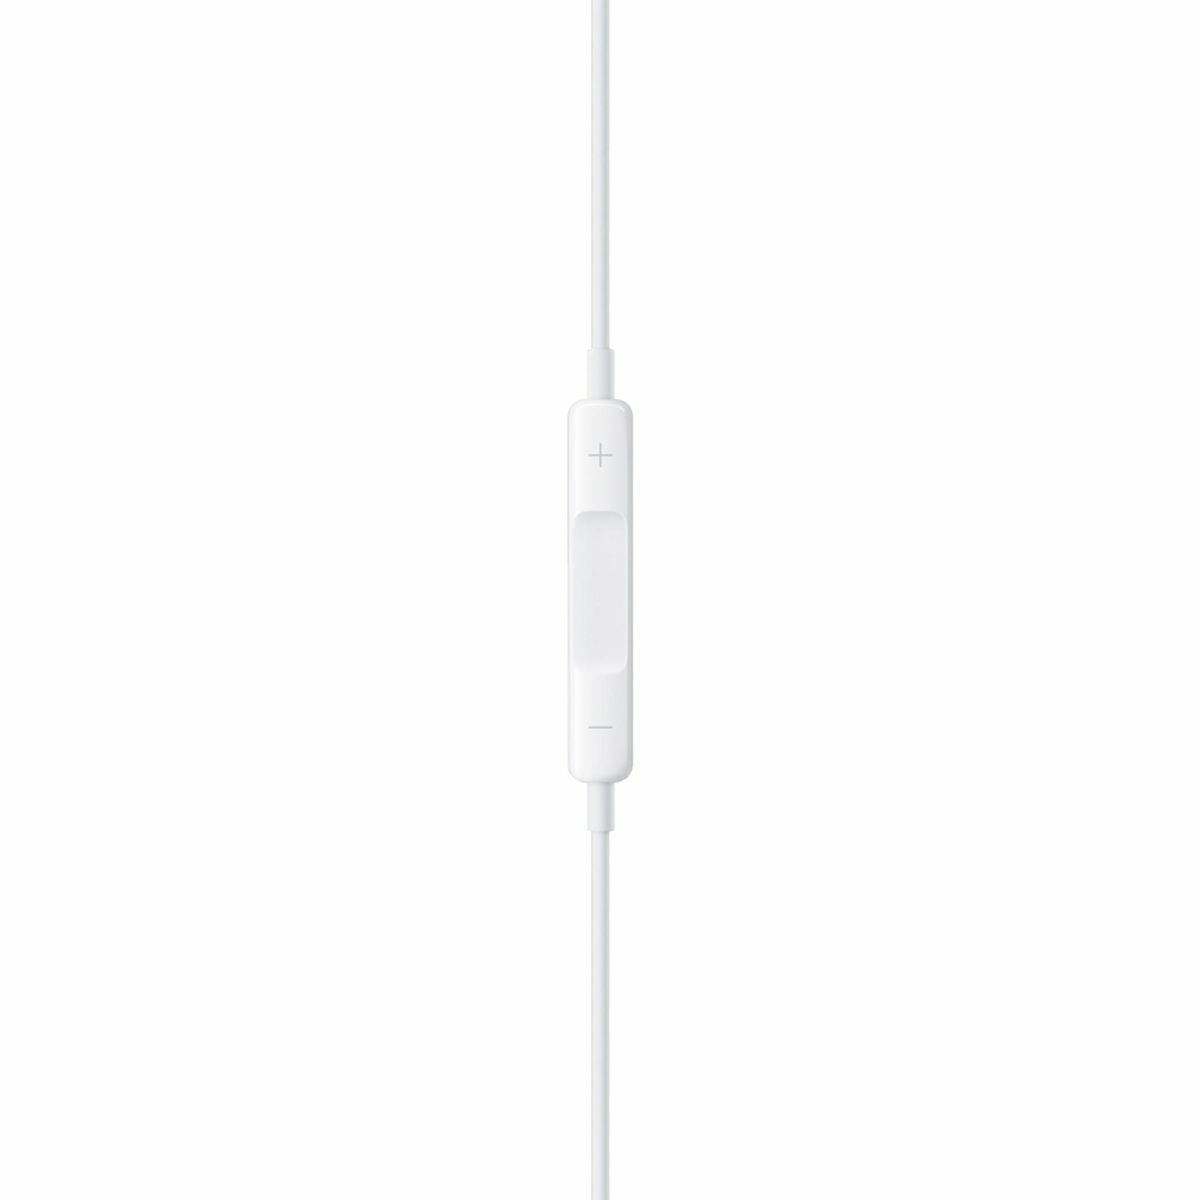 Kép 5/5 - Apple Earpods fülhallgató USB Type-C csatlakozóval, fehér EU MTJY3